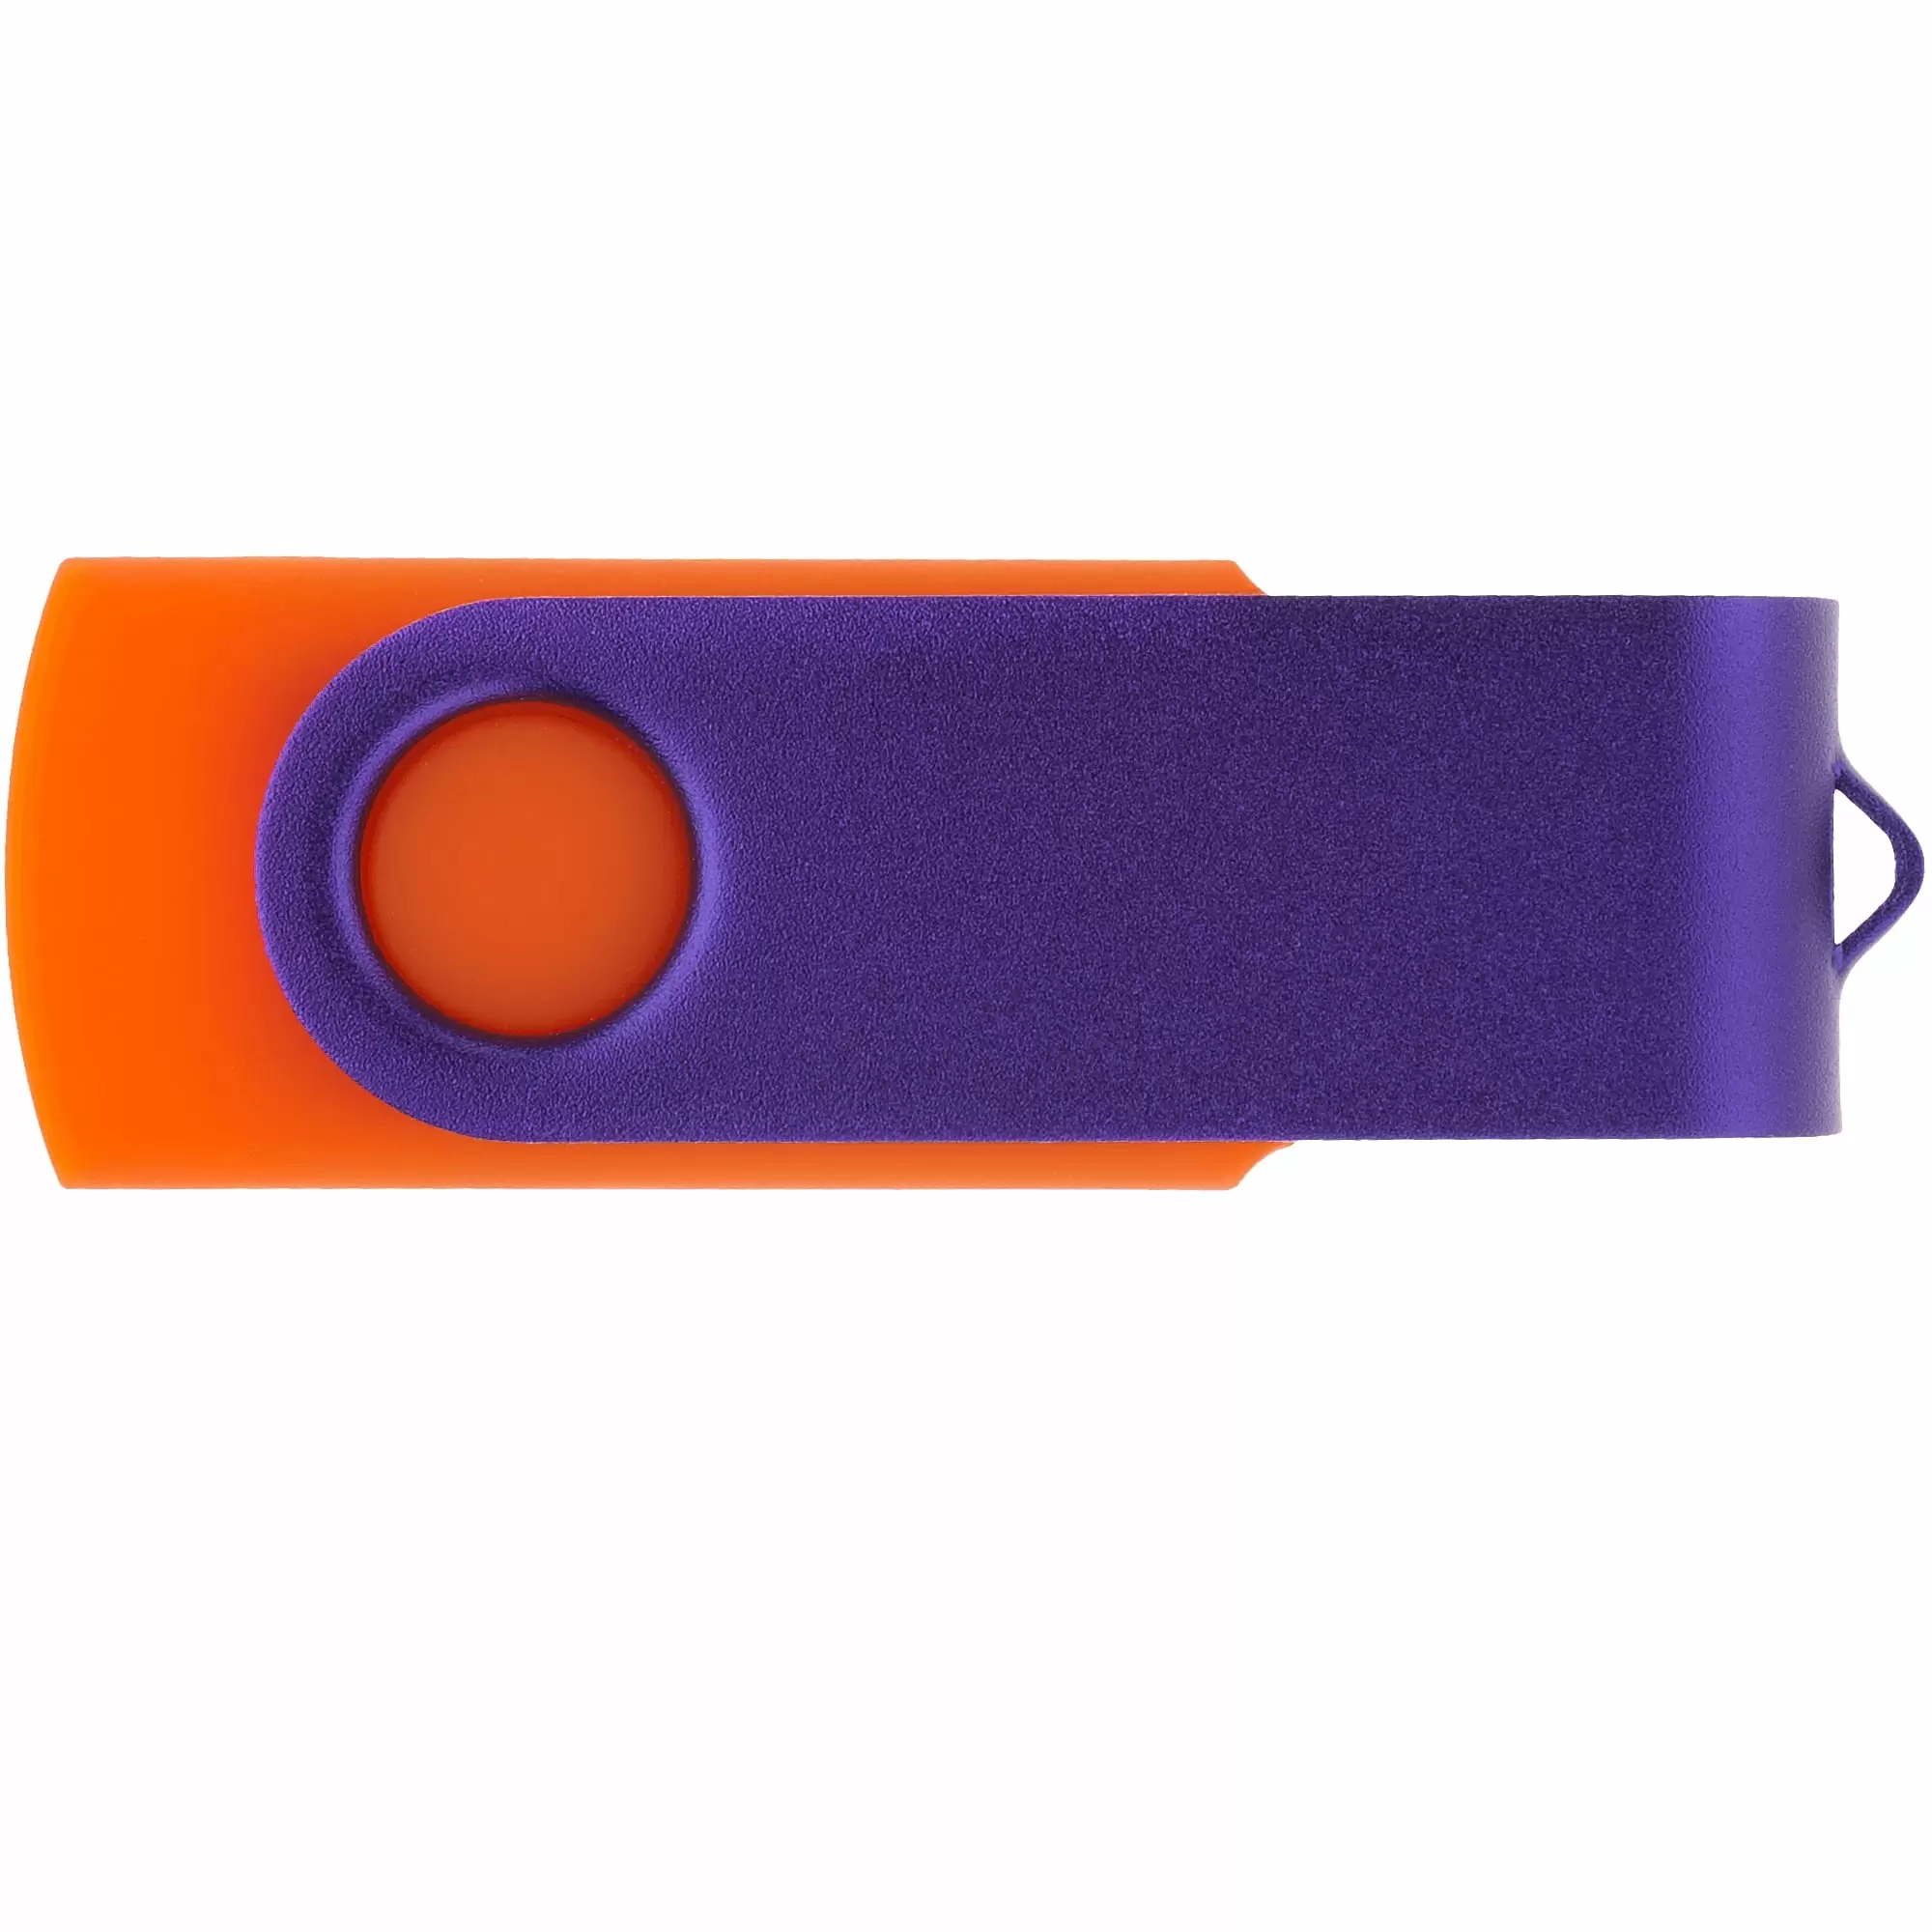 Флешка TWIST COLOR MIX Оранжевая с фиолетовым 4016-05-11